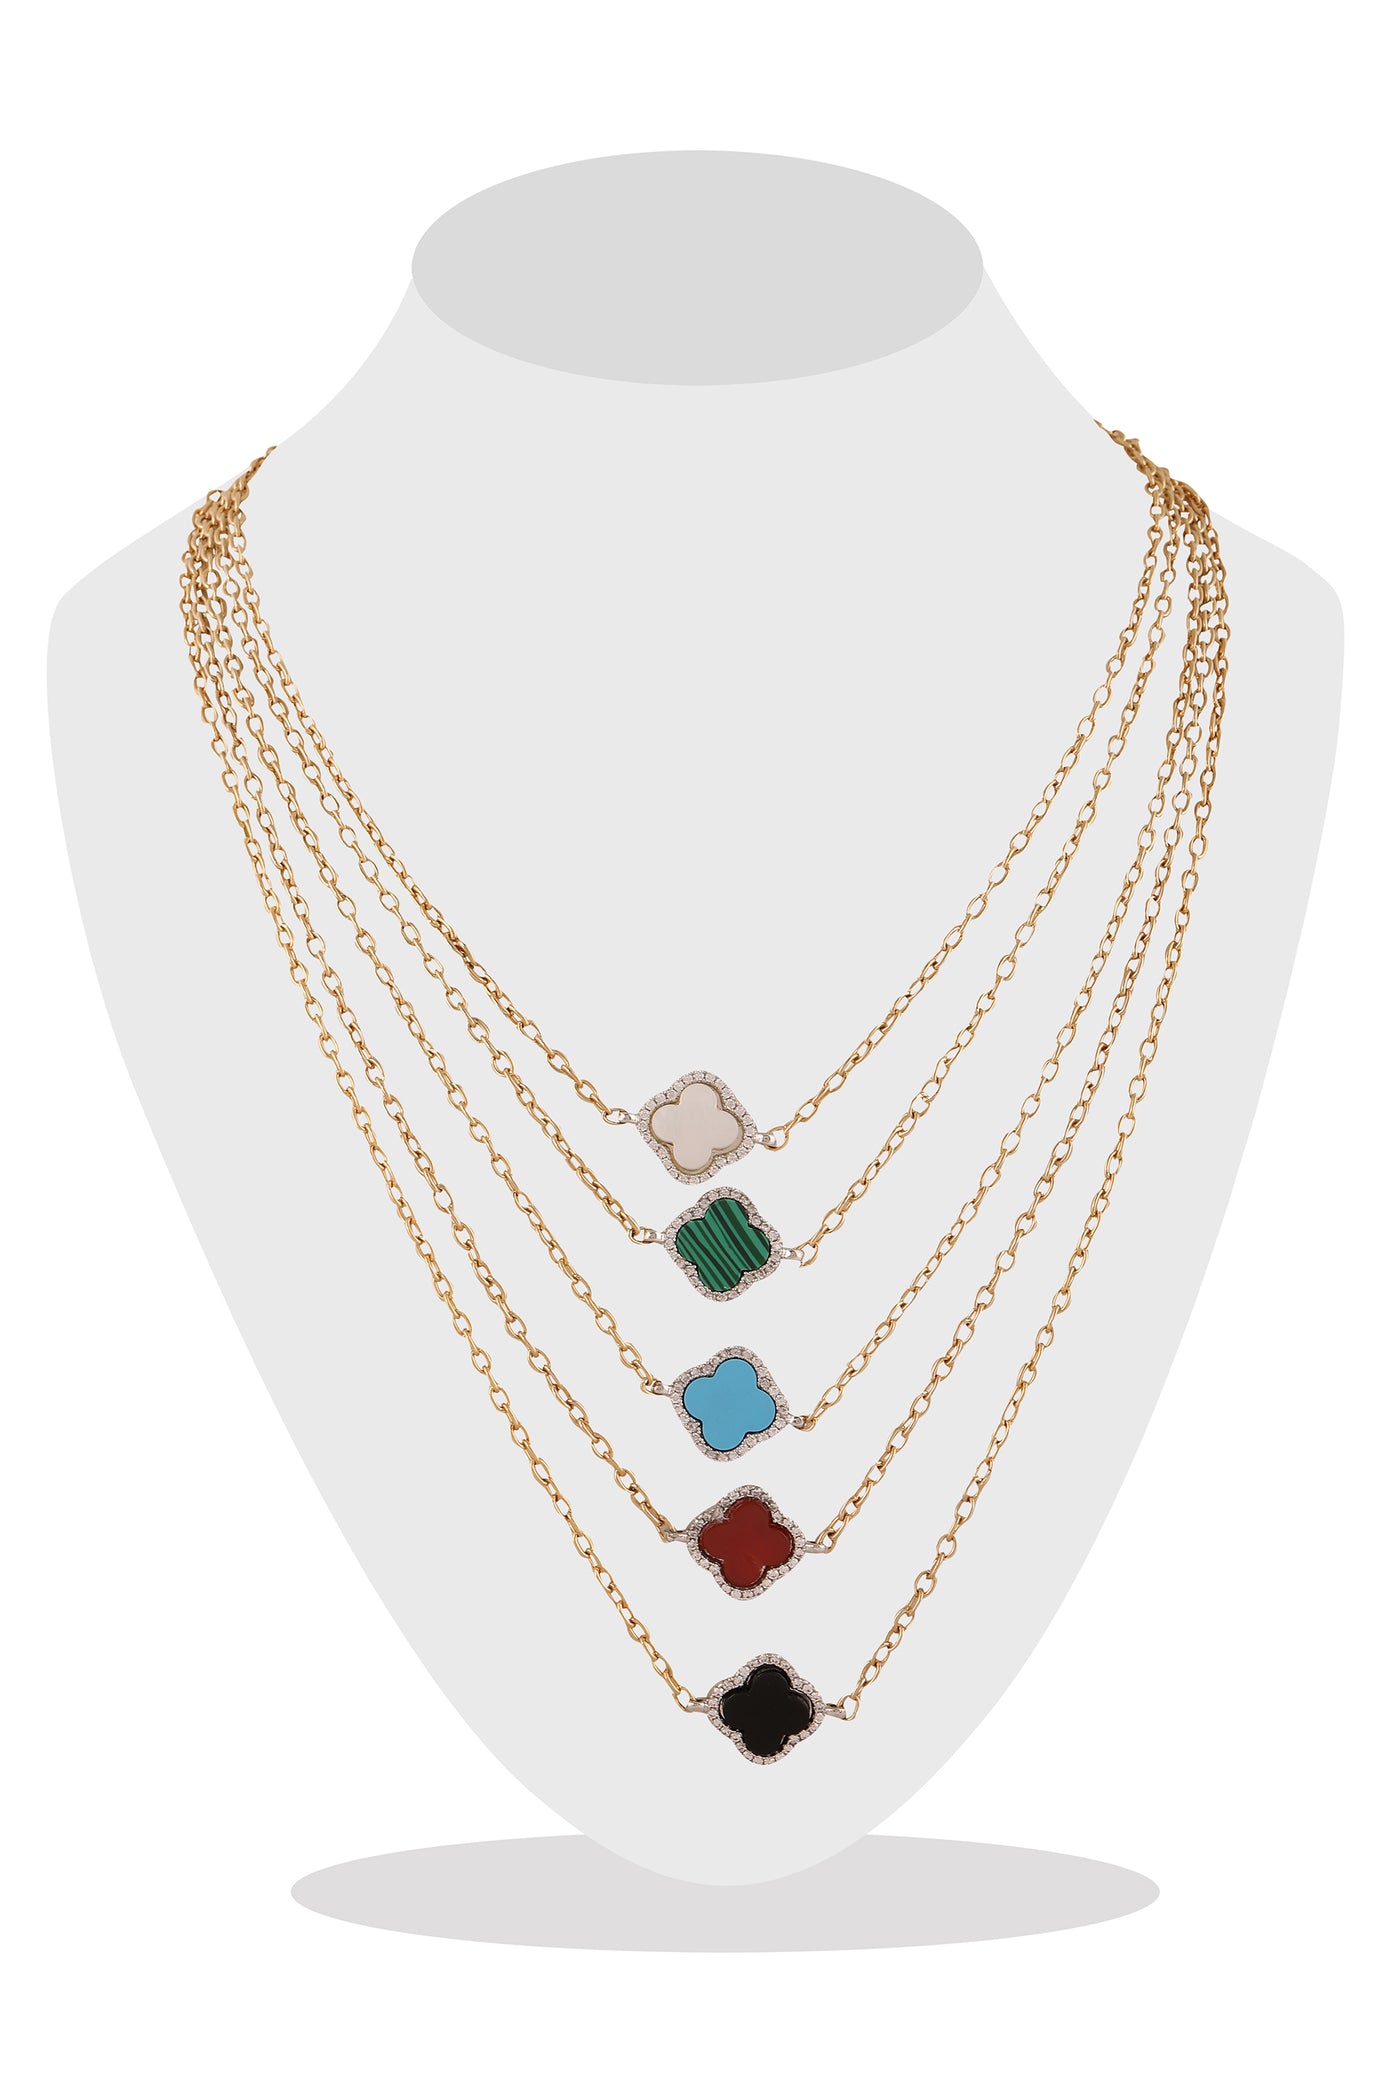 Raya jewels Multicolour Layered Necklace fashion jewellery online shopping melange singapore indian designer wear